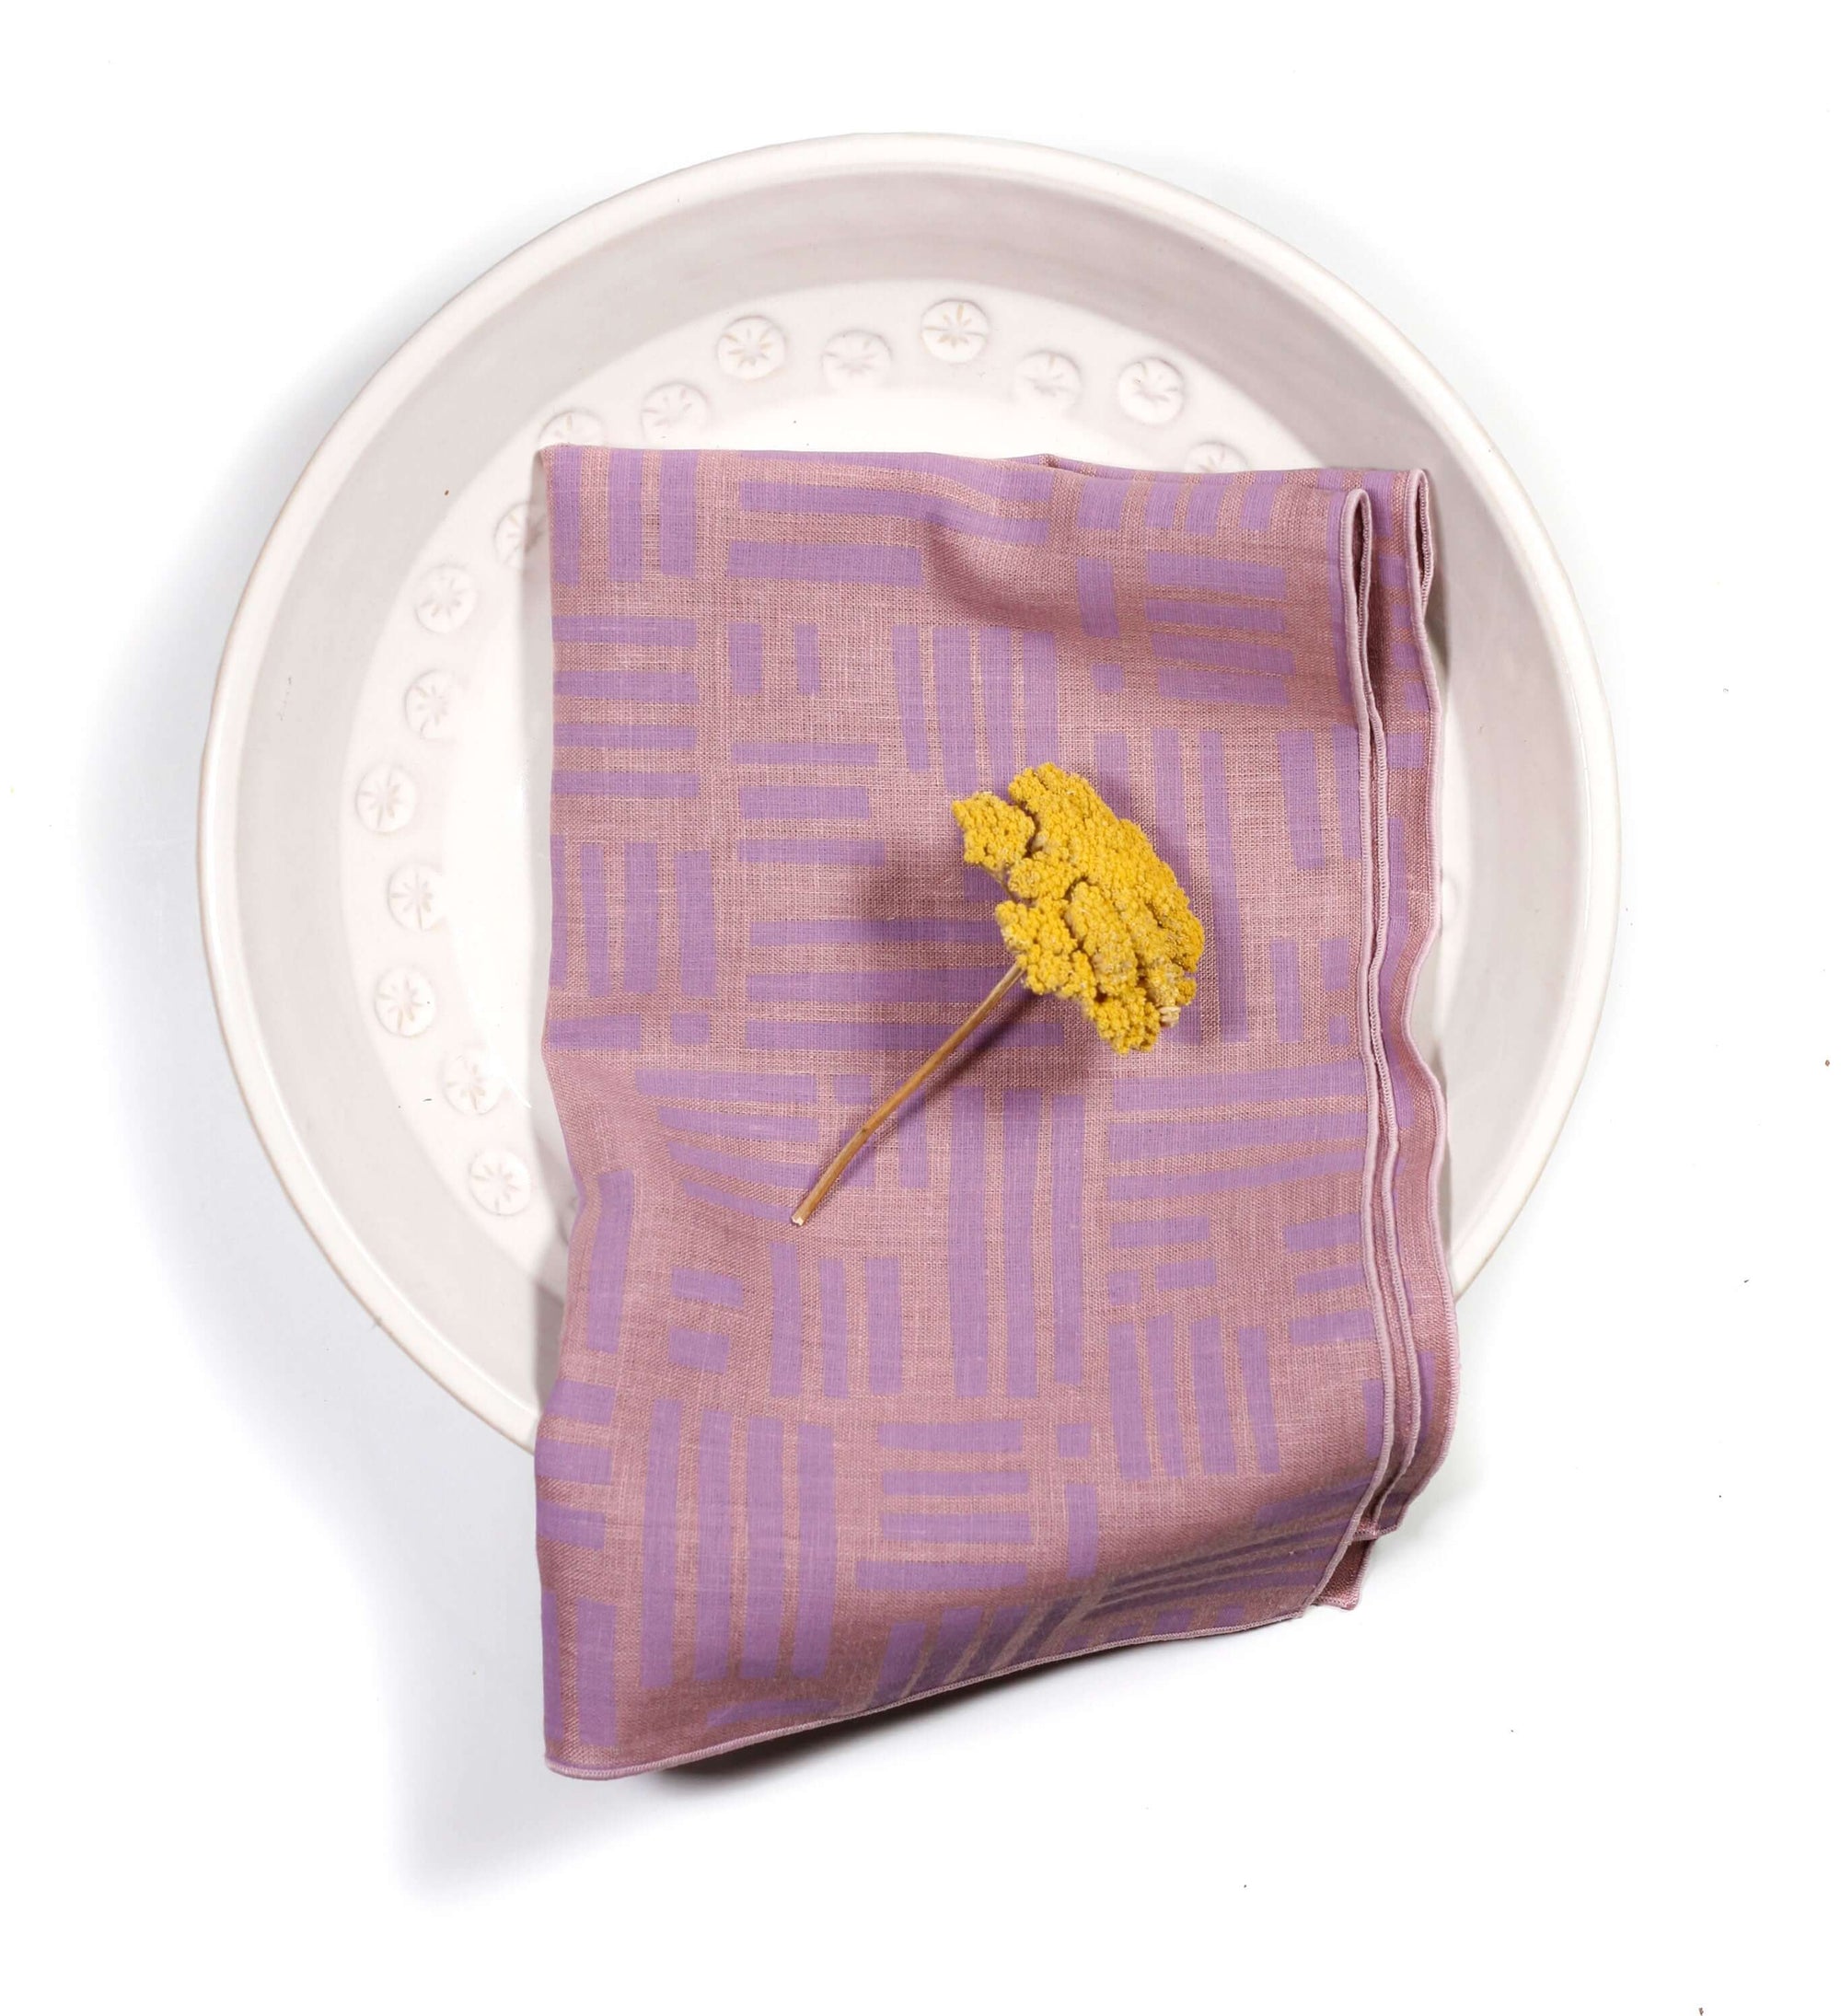 'Maze' 100% Linen Tea Towel in Amethyst